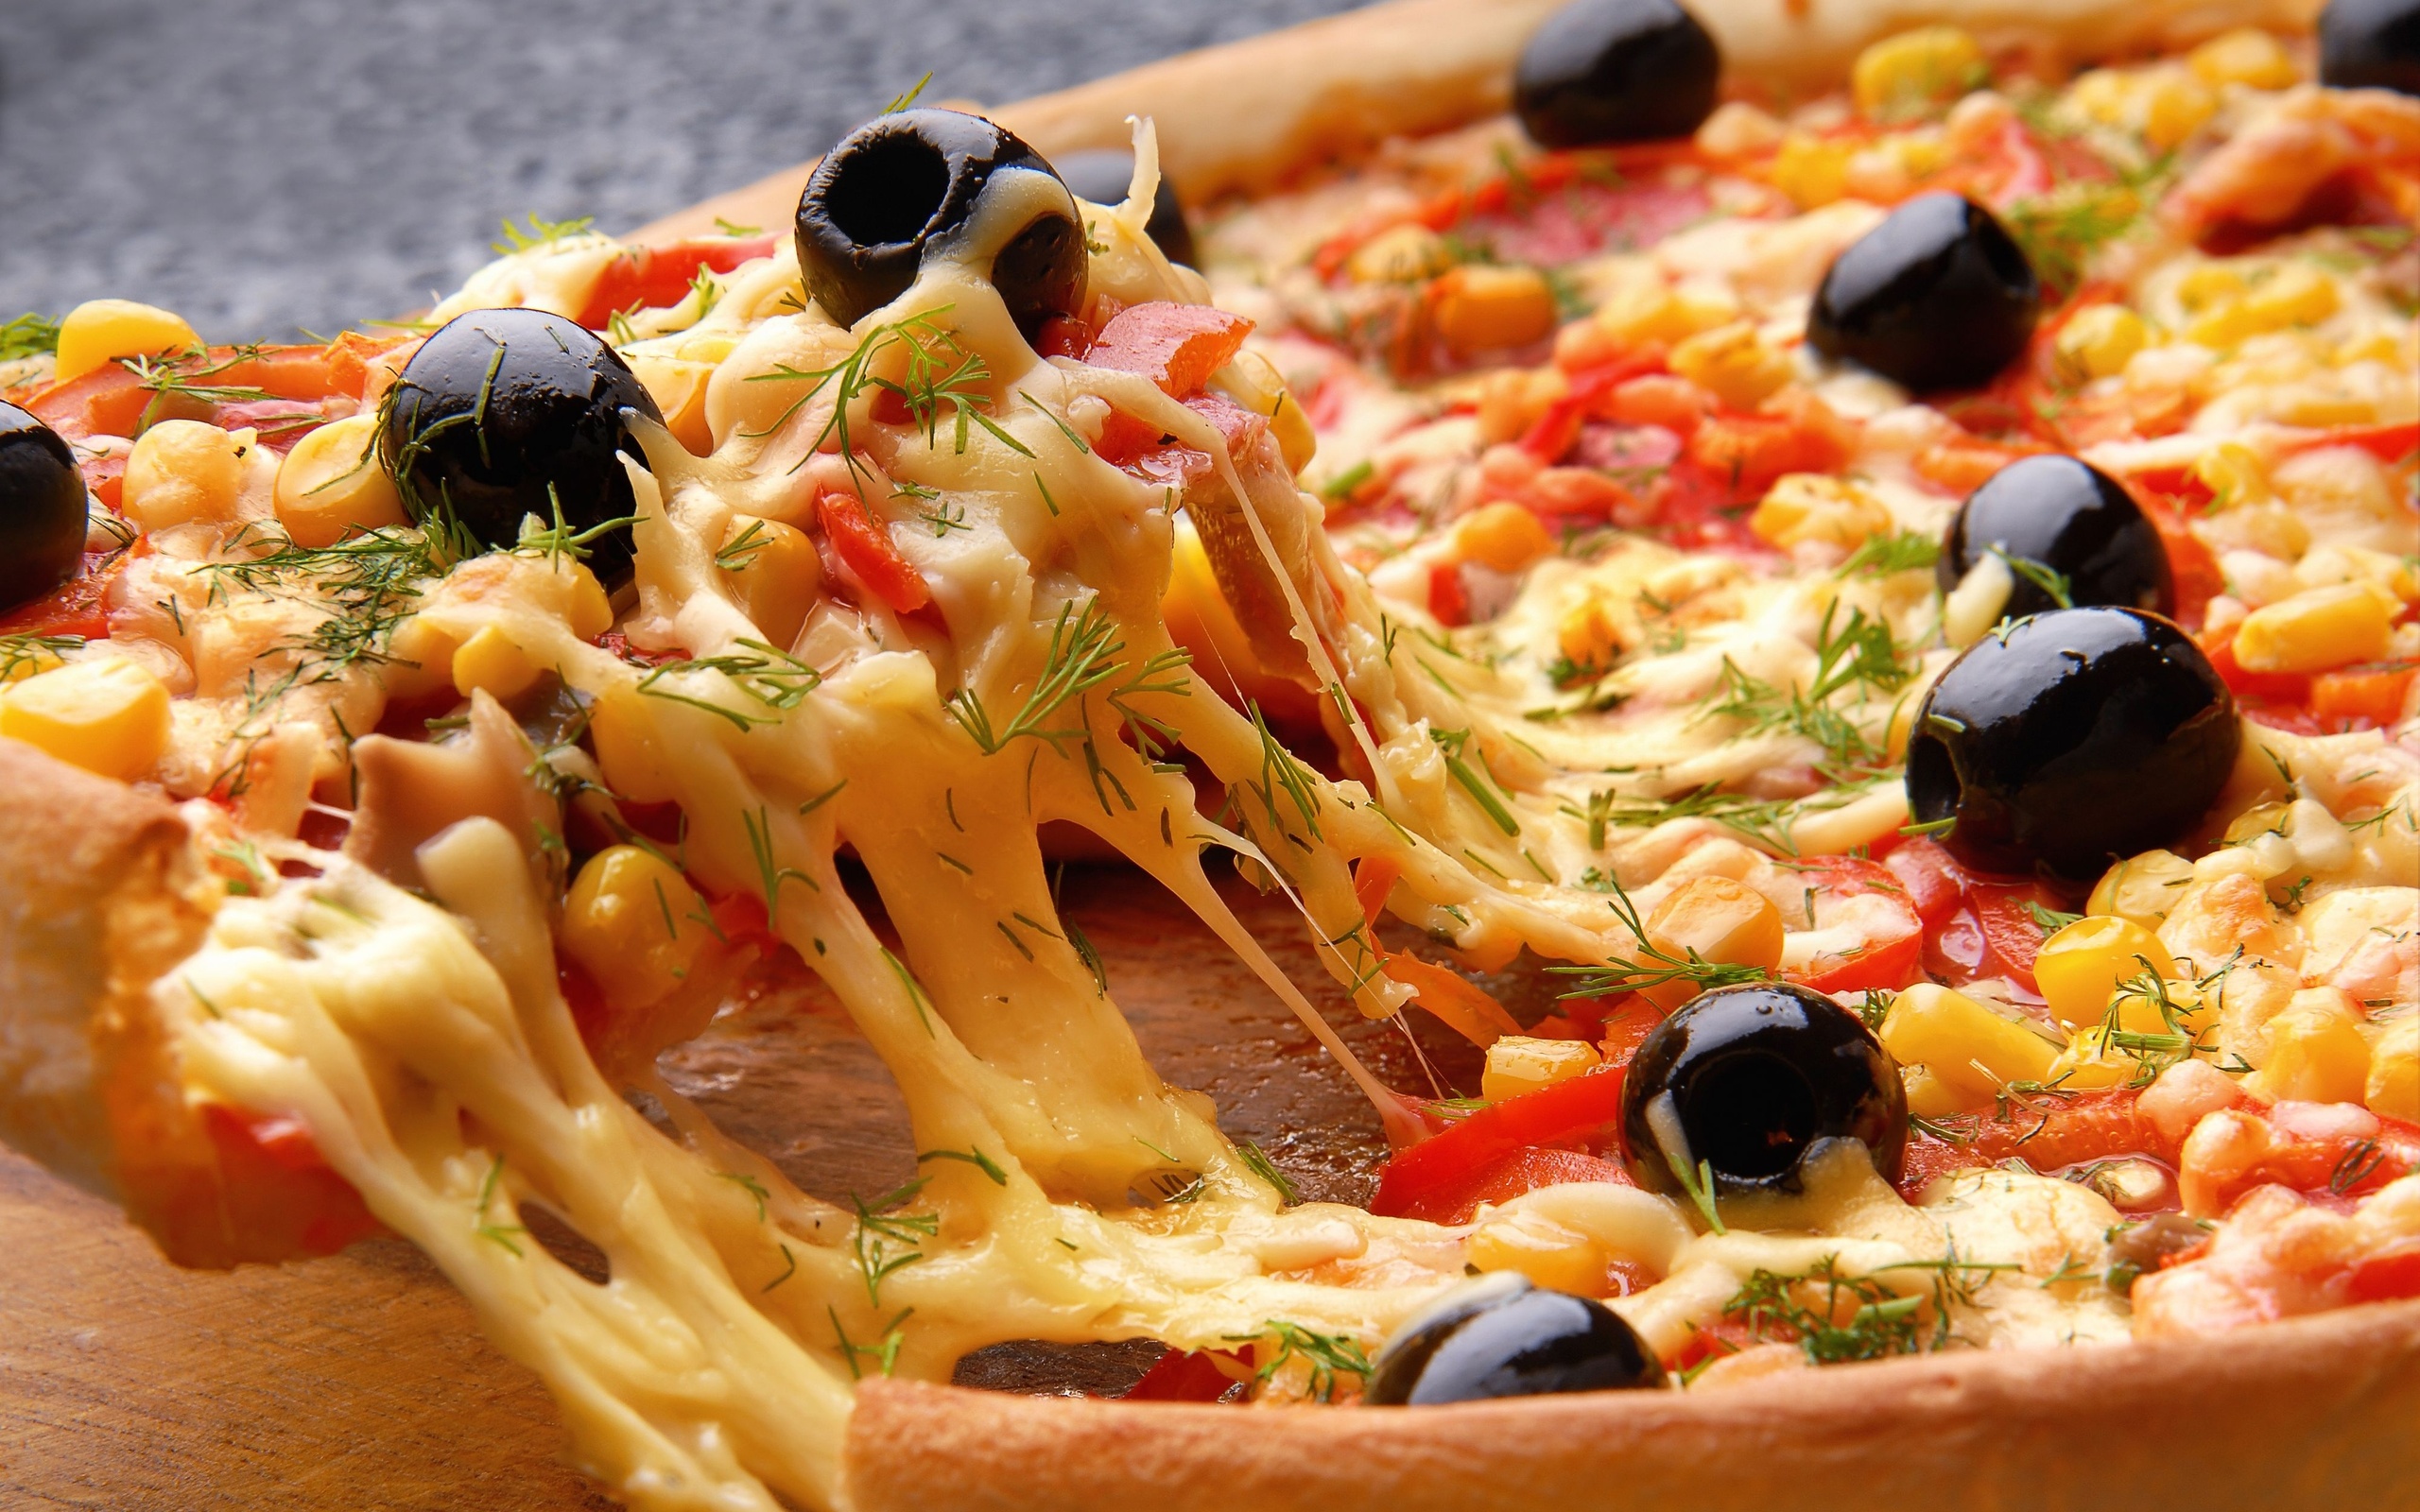 Para un cumple o un evento distinto pensá en contratar un catering pizza party en tu casa o un salon. Todo lo que necesitas saber sobre los distintos sabores y especialidades que tenemos preparadas para vos